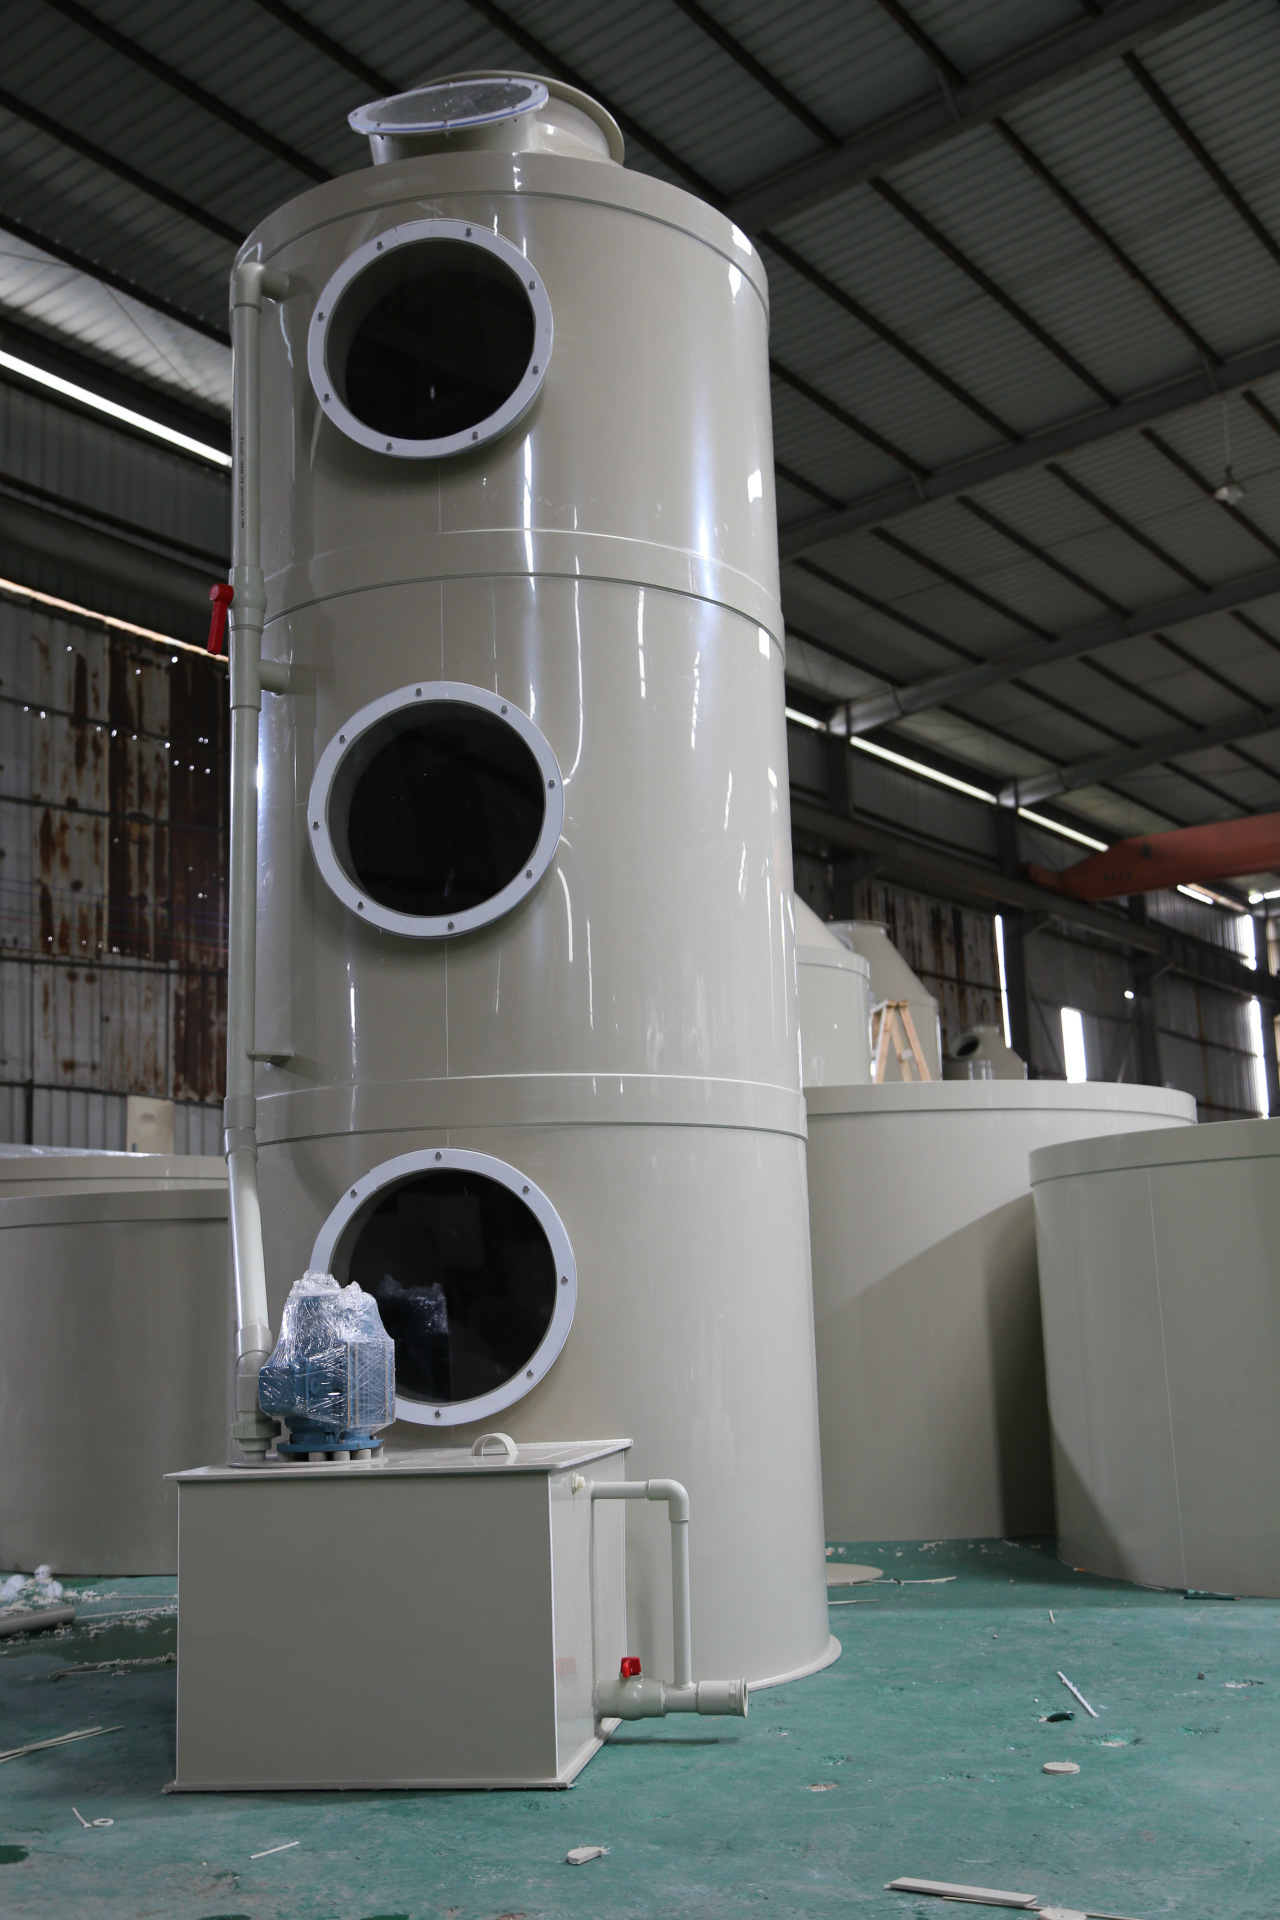 本工作采用喷淋工艺处理PVC塑料生产废气，将的吸收液与改型的喷淋塔相结合，取得了较好的处理效果，且设备简单、维护方便、运行费用低，可满足市场需求。